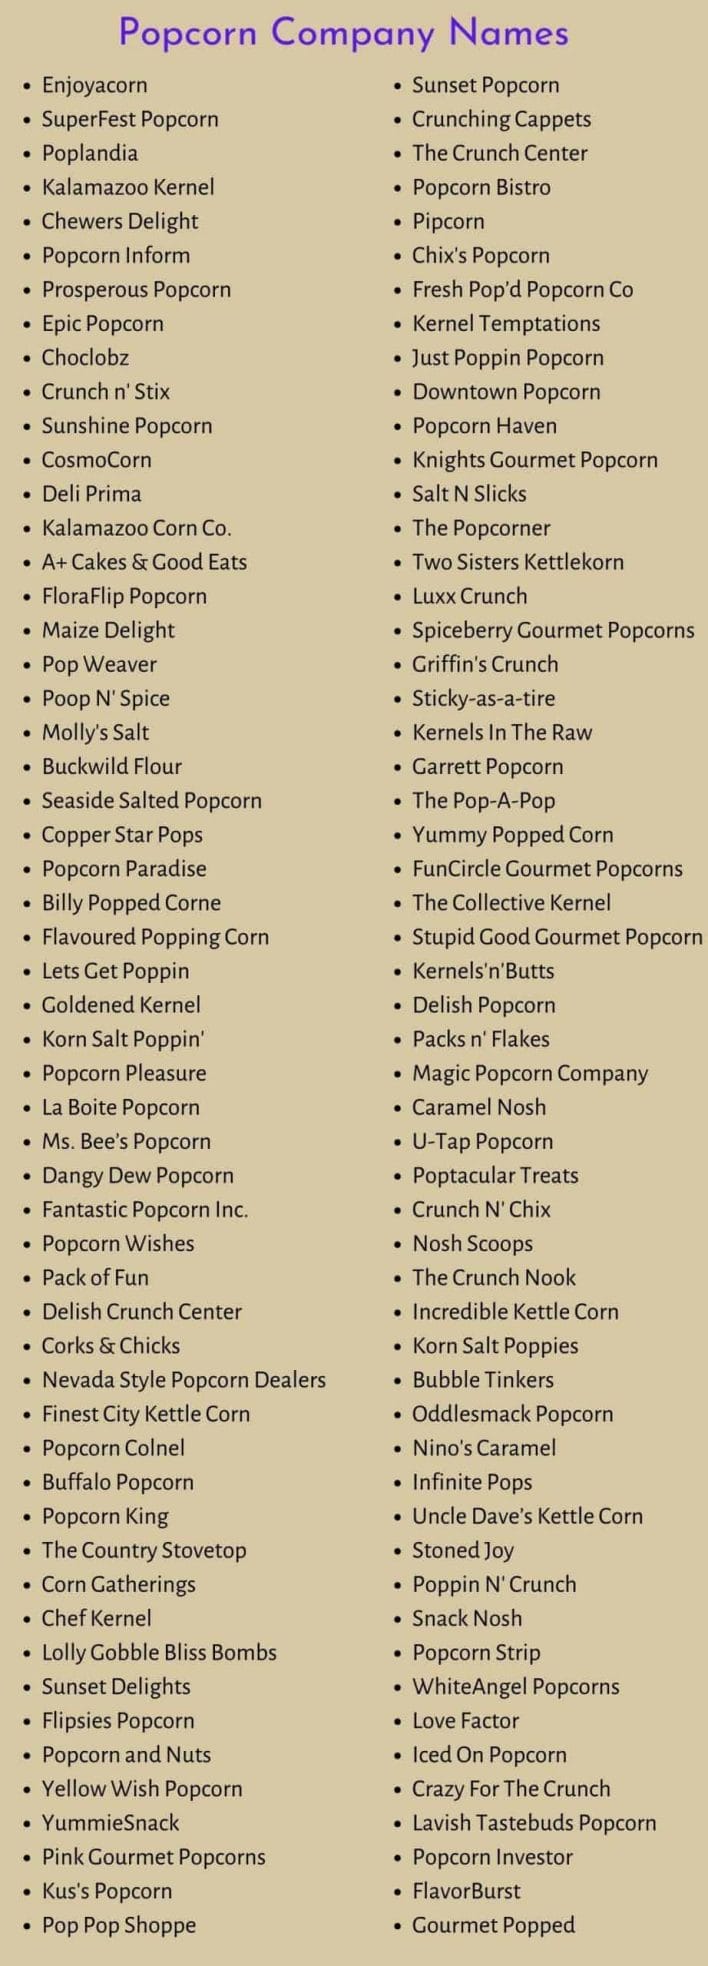 Popcorn Company Names